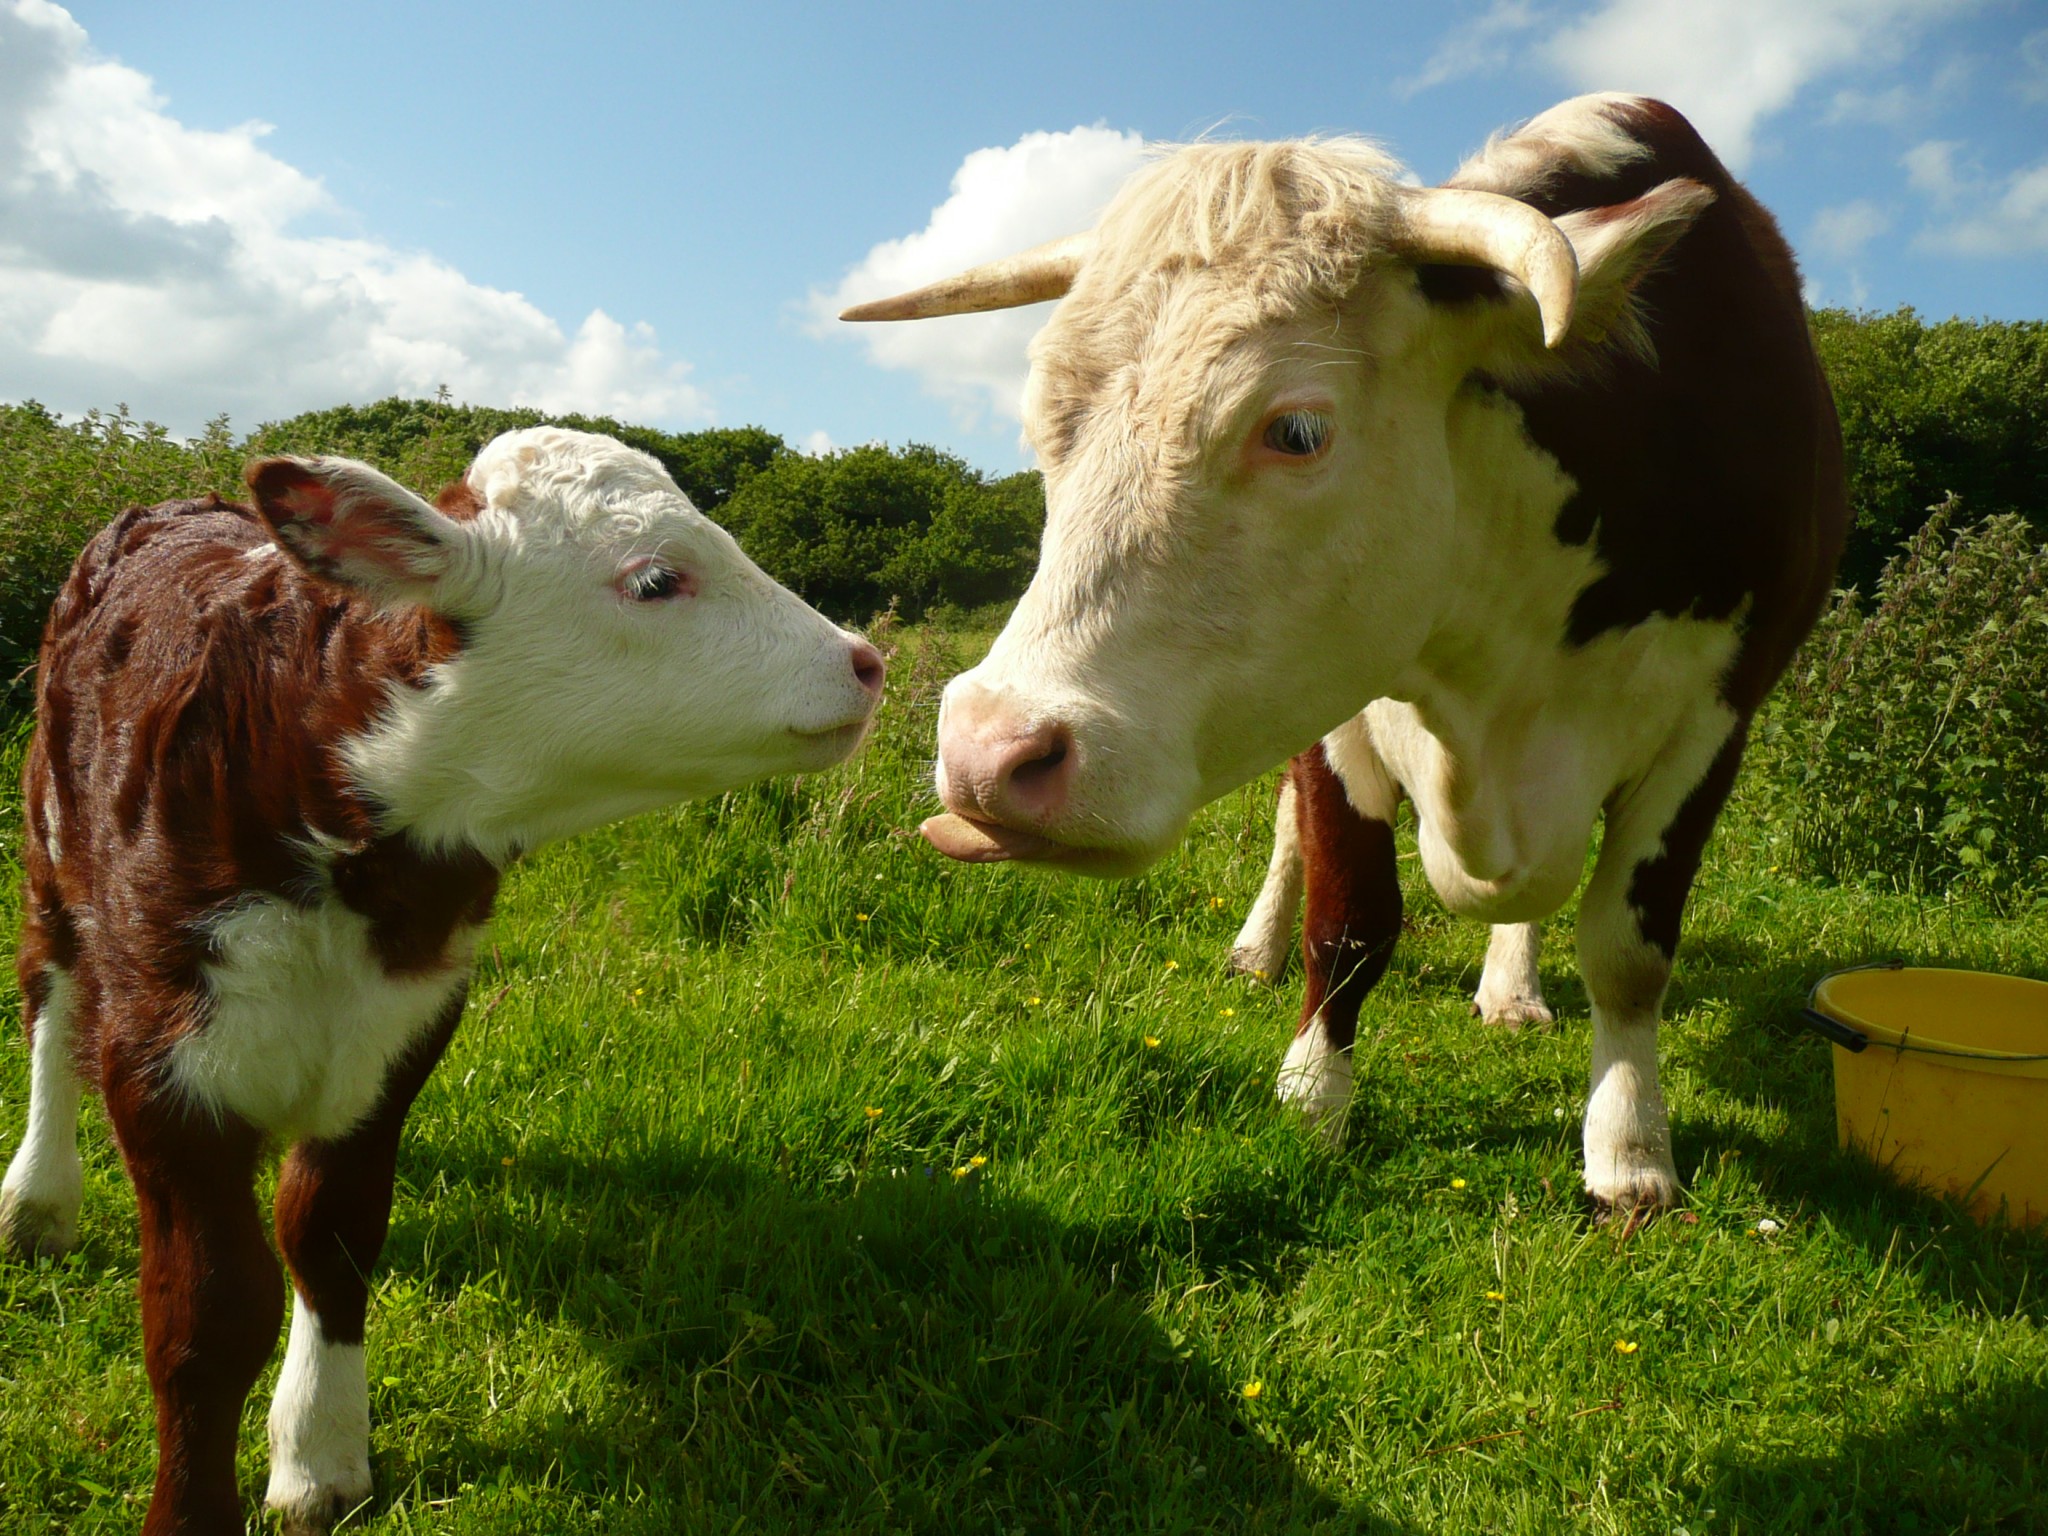 La comunicación por mugidos entre una vaca y su cría es más sofisticada de lo creído